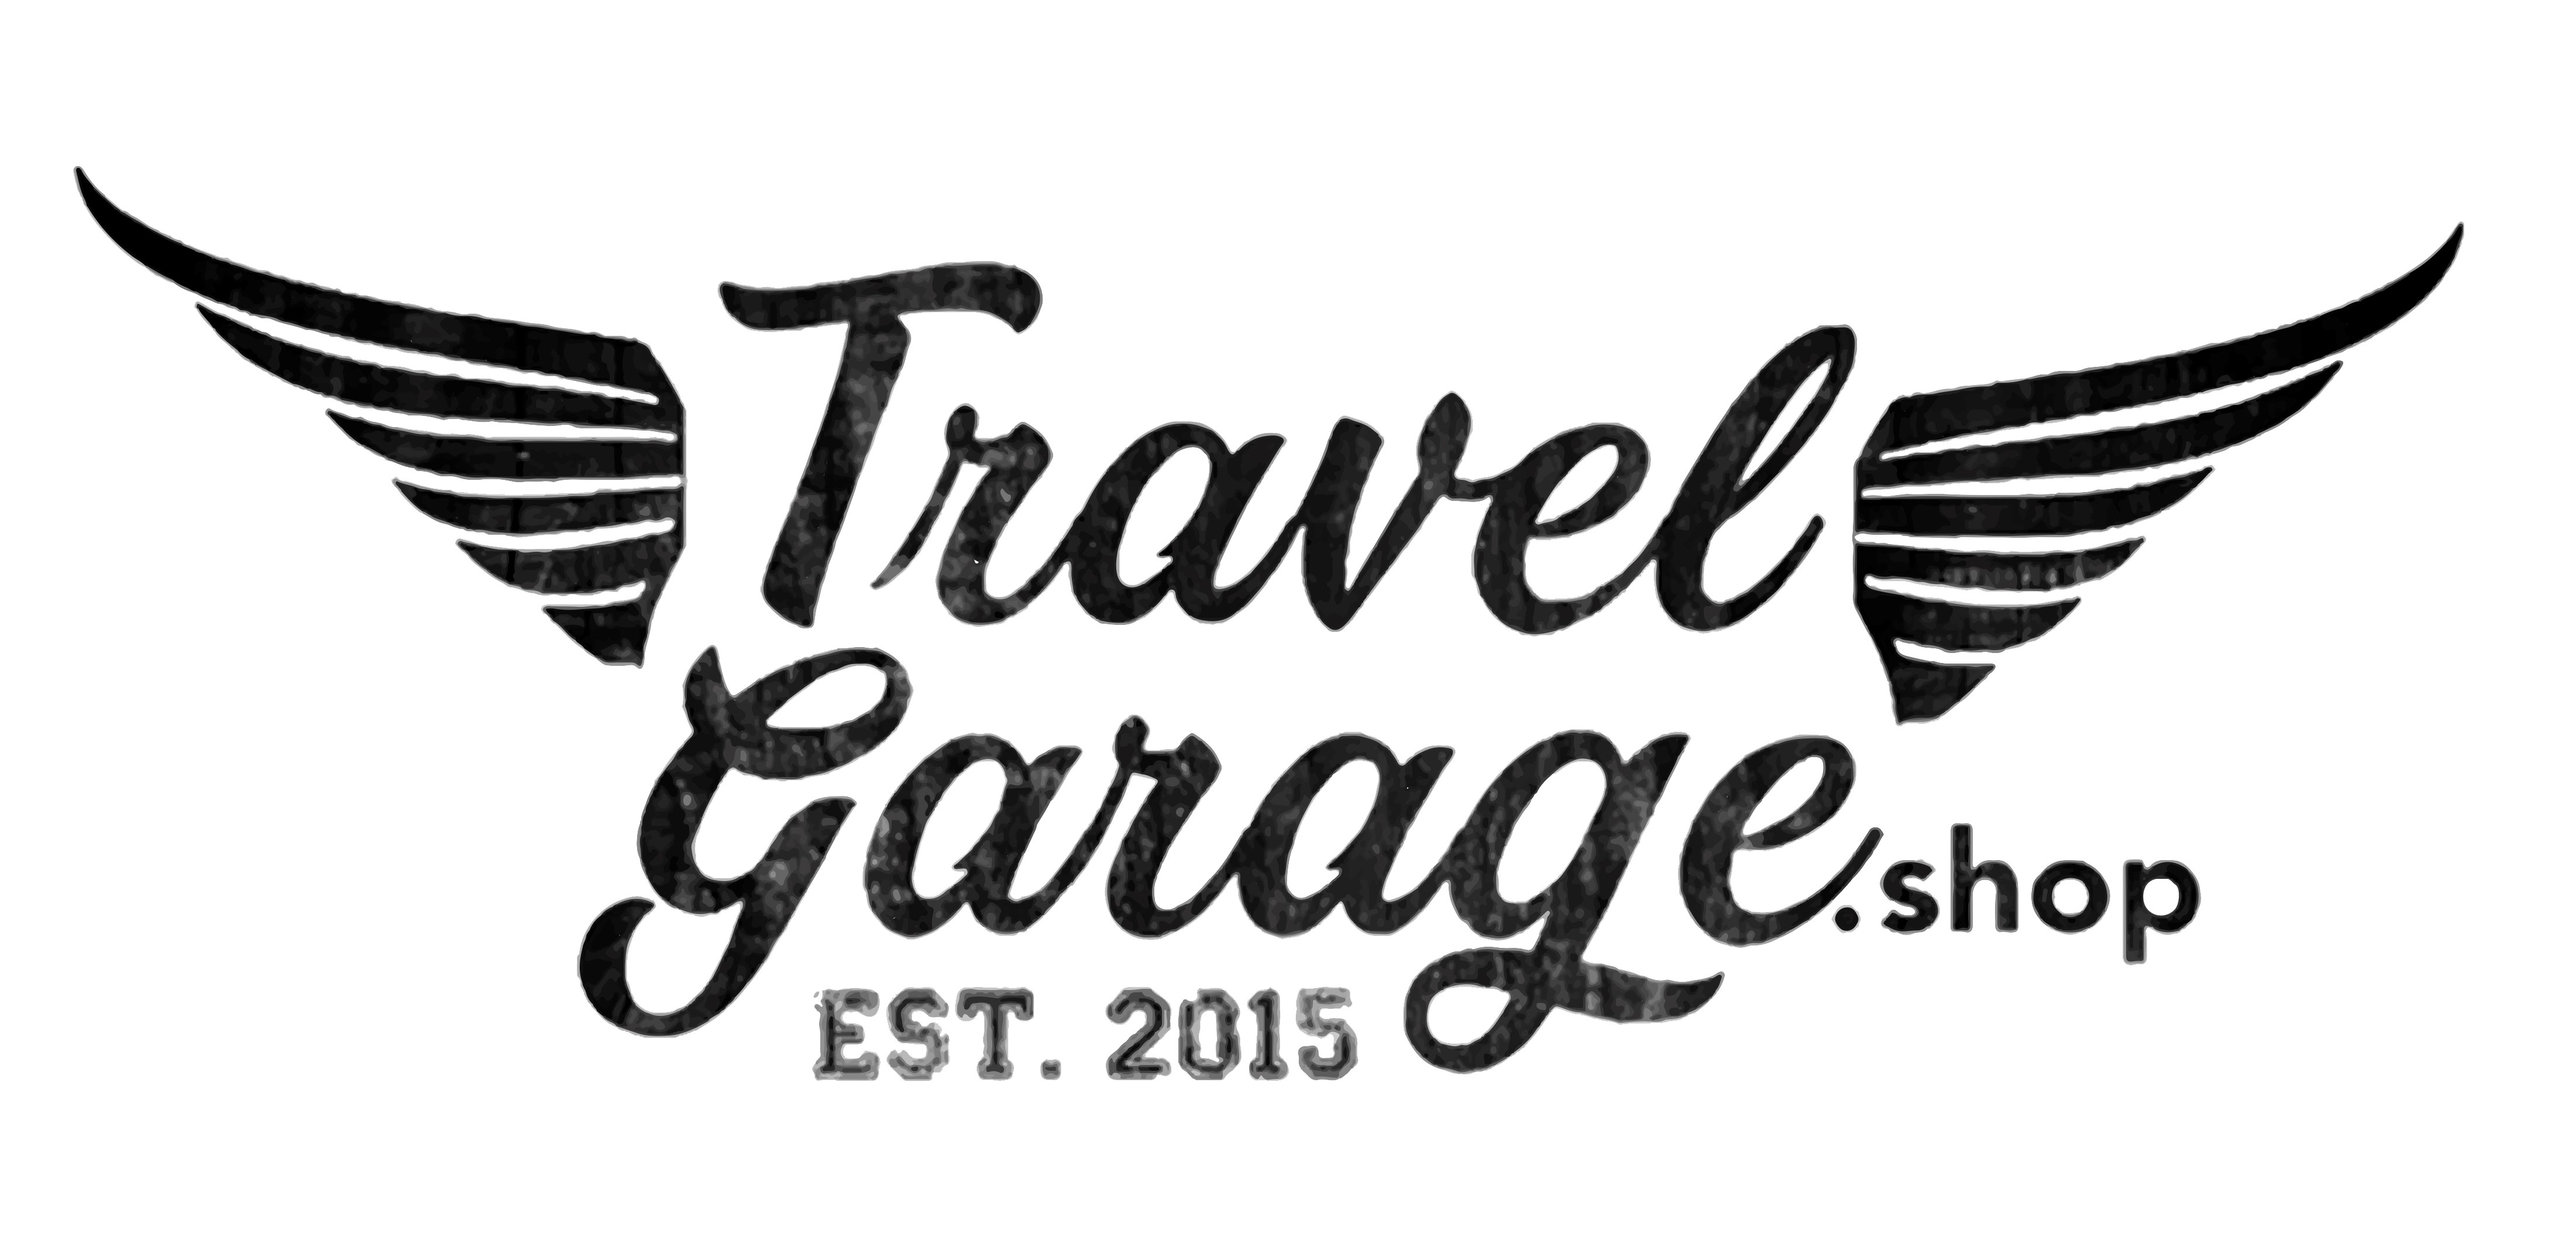 Travel Garage